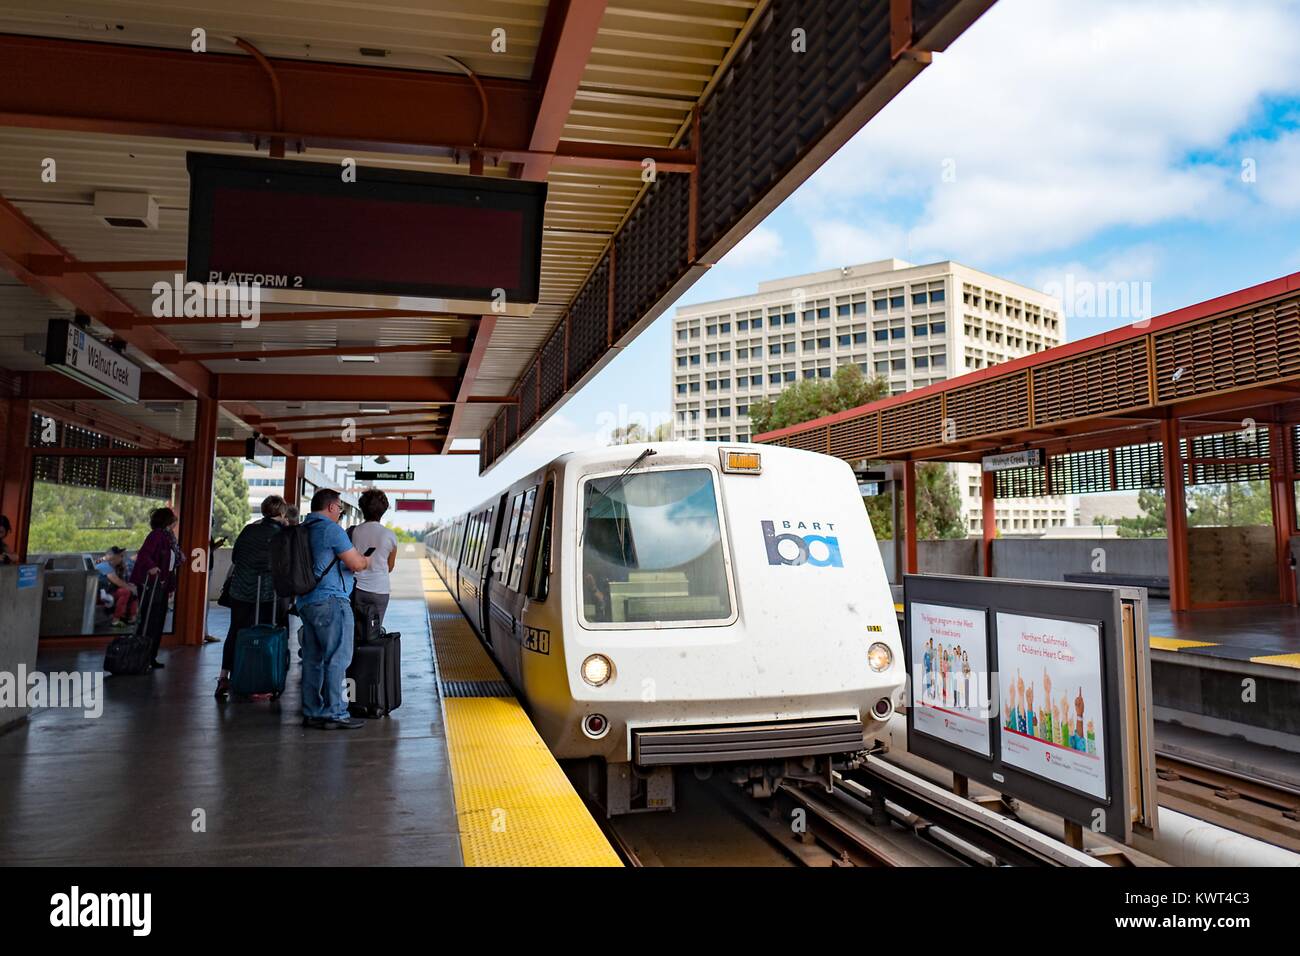 Un treno arriva e preparare i passeggeri a bordo a Walnut Creek, California stazione della Bay Area Rapid Transit (BART) Sistema ferroviario leggero, 13 settembre 2017. Foto Stock